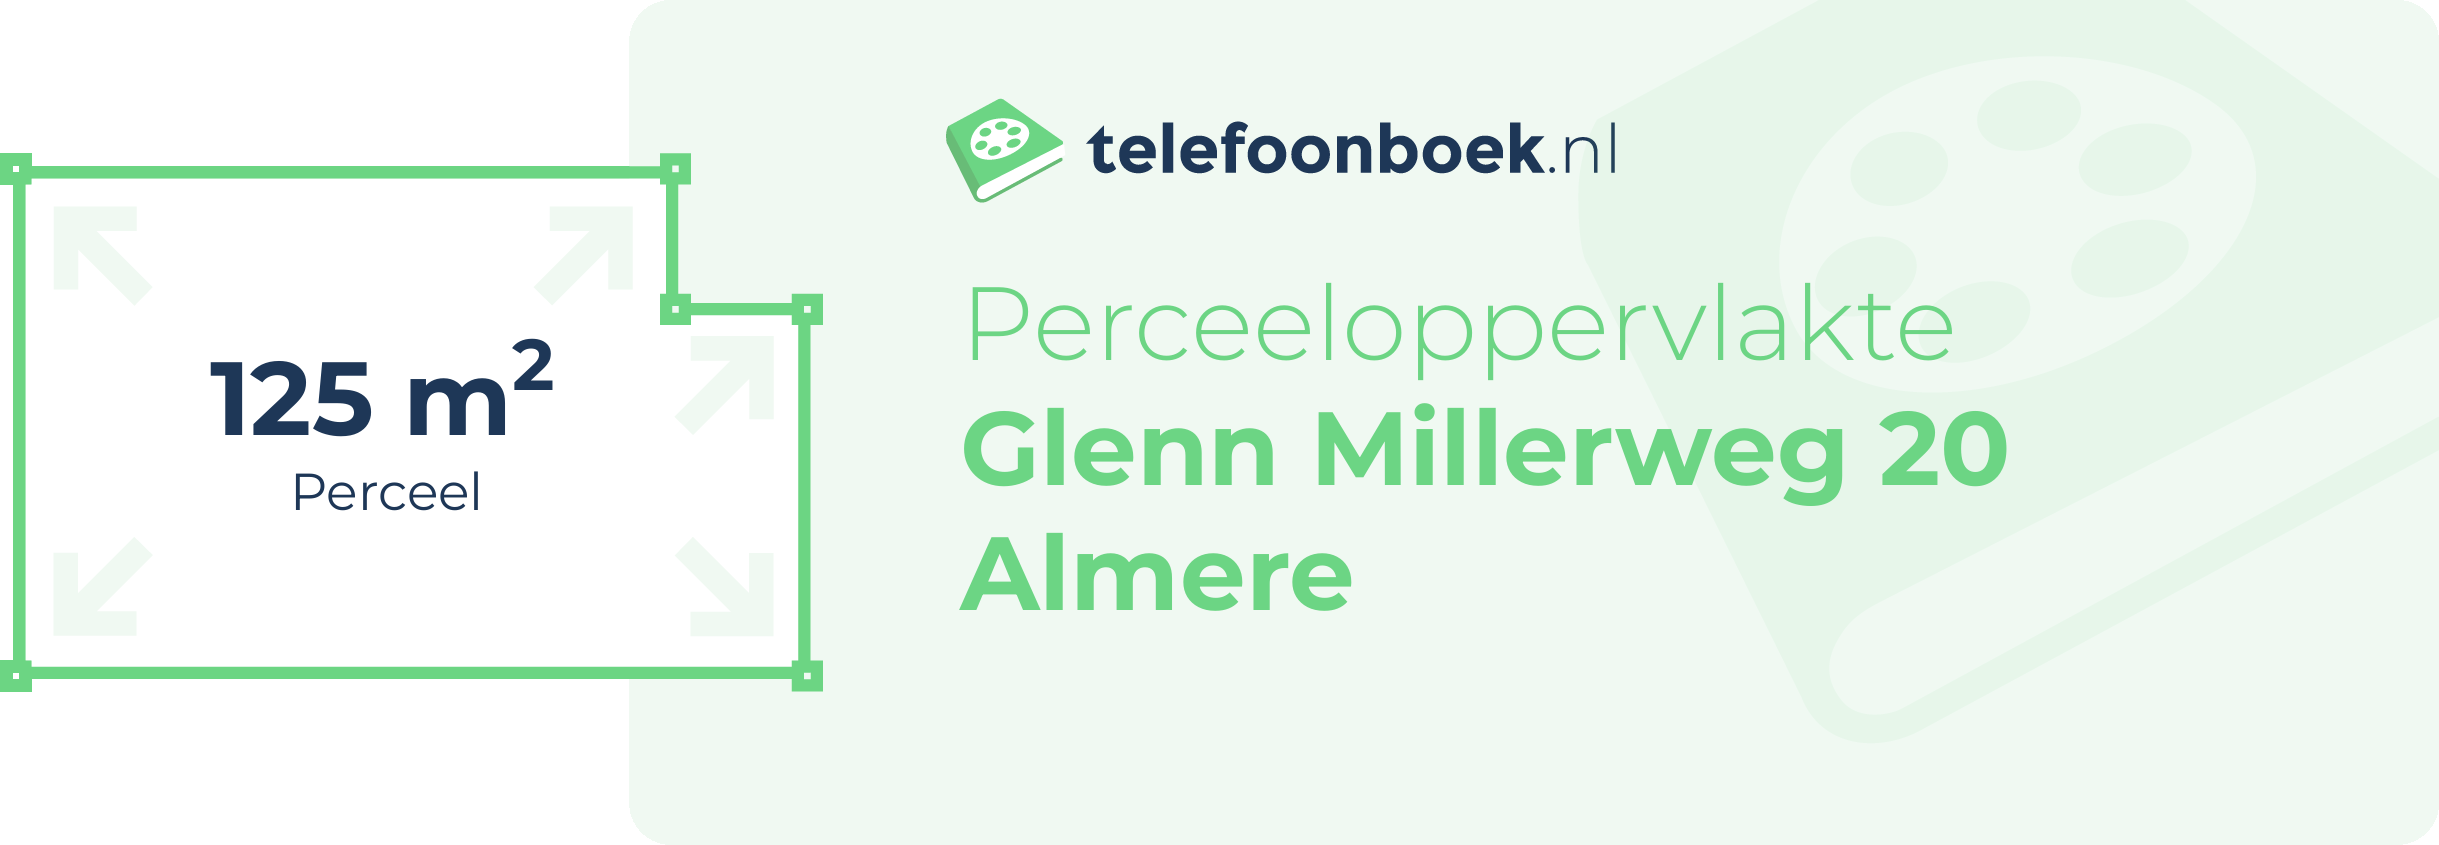 Perceeloppervlakte Glenn Millerweg 20 Almere